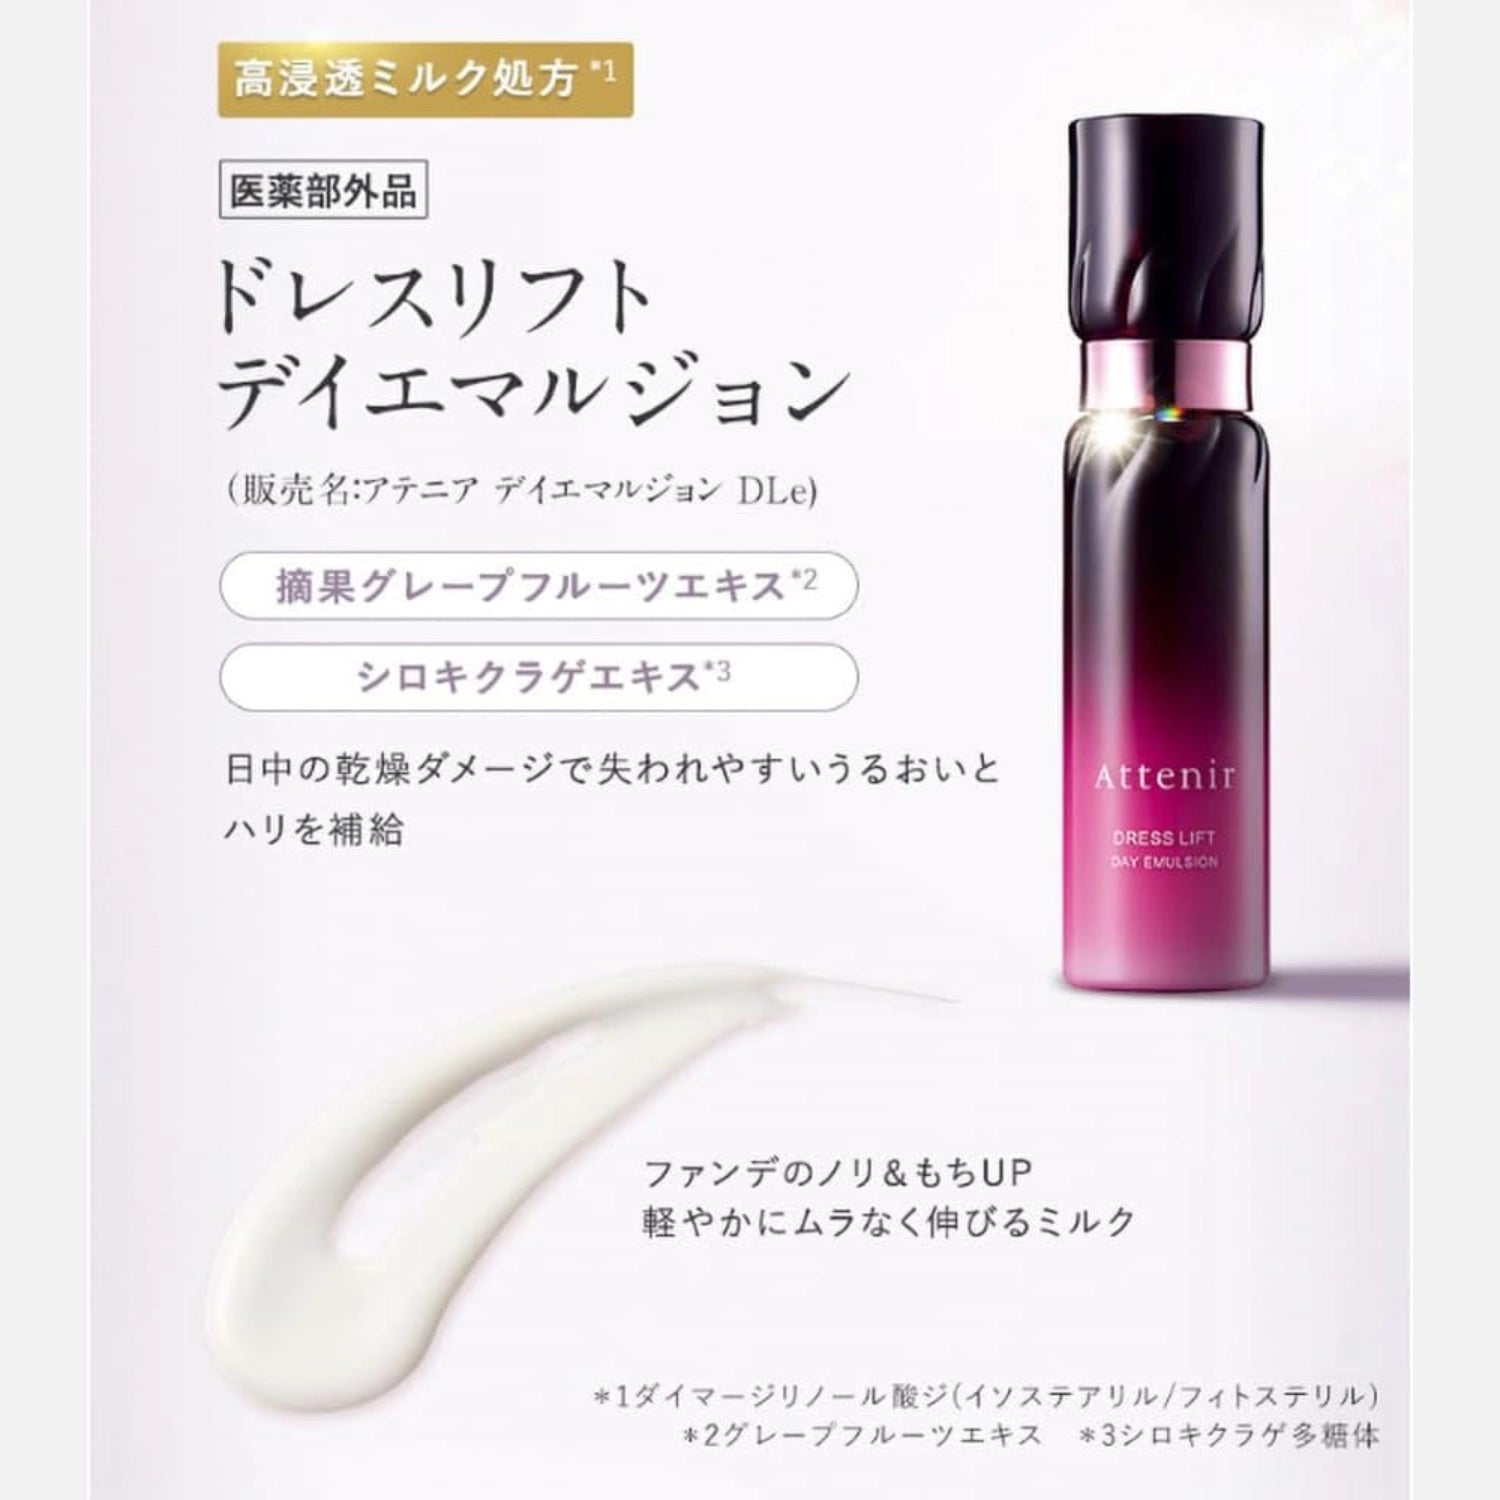 Attenir Dress Lift Day Emulsion 60ml - Buy Me Japan